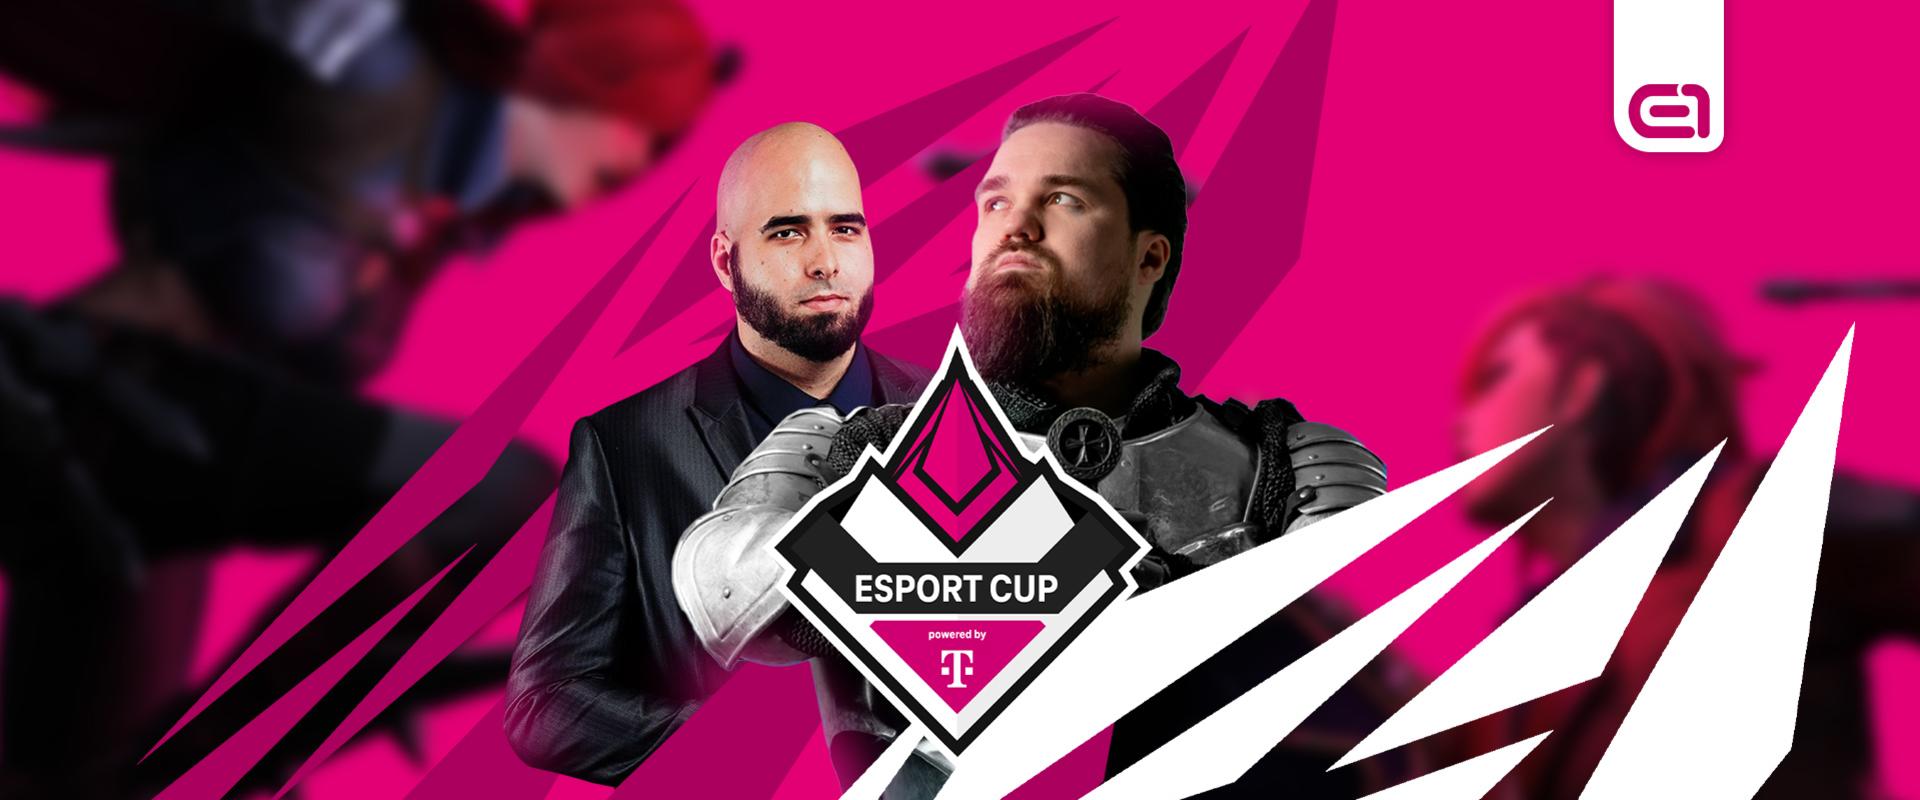 Jelentkezz Pierce és Paplovag csapatába az esport CUP powered by Telekom LoL-versenyén!